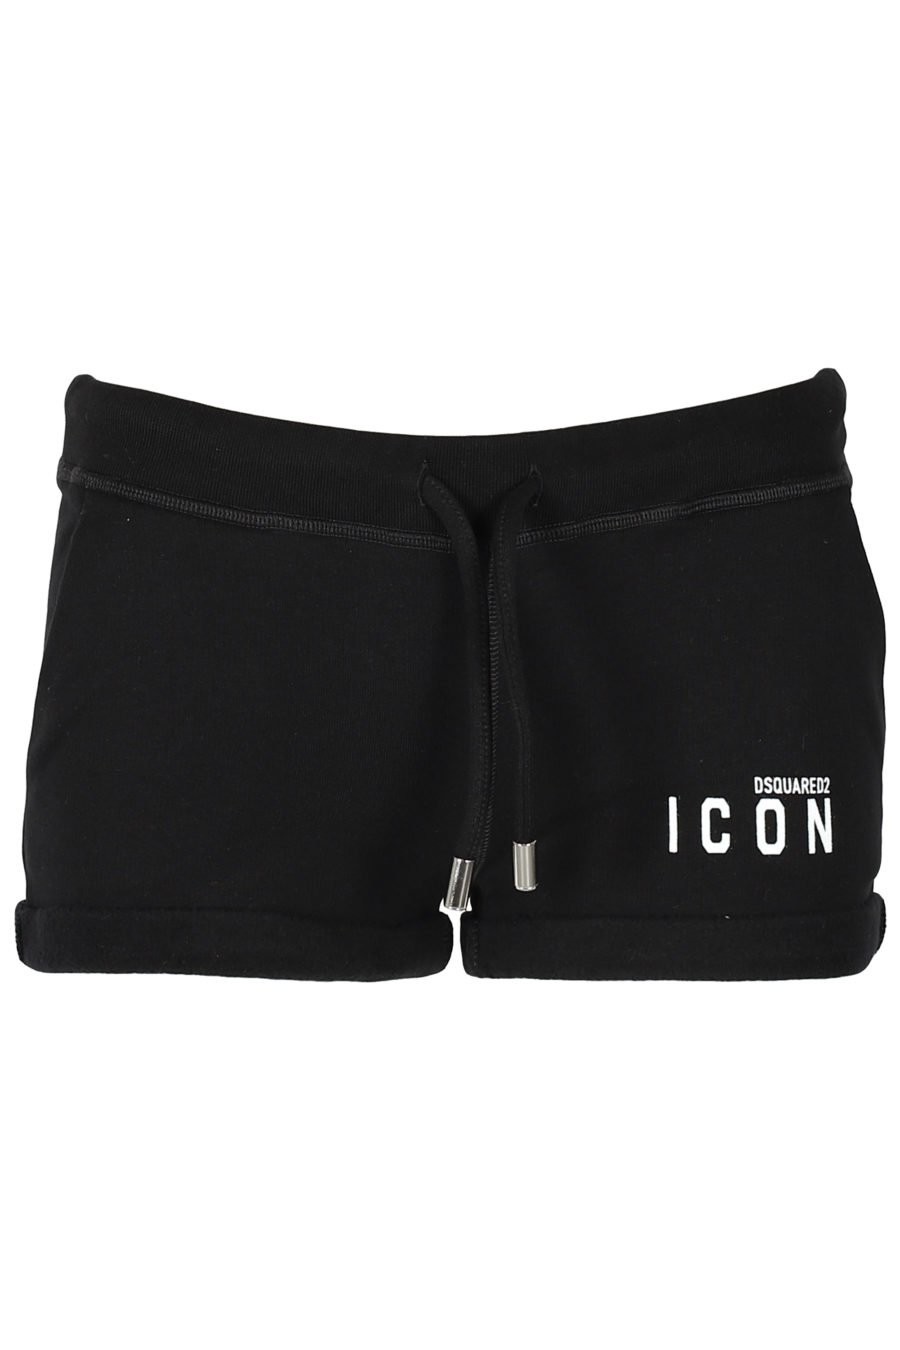 Pantalón de chándal negro corto "Icon" - IMG 3238